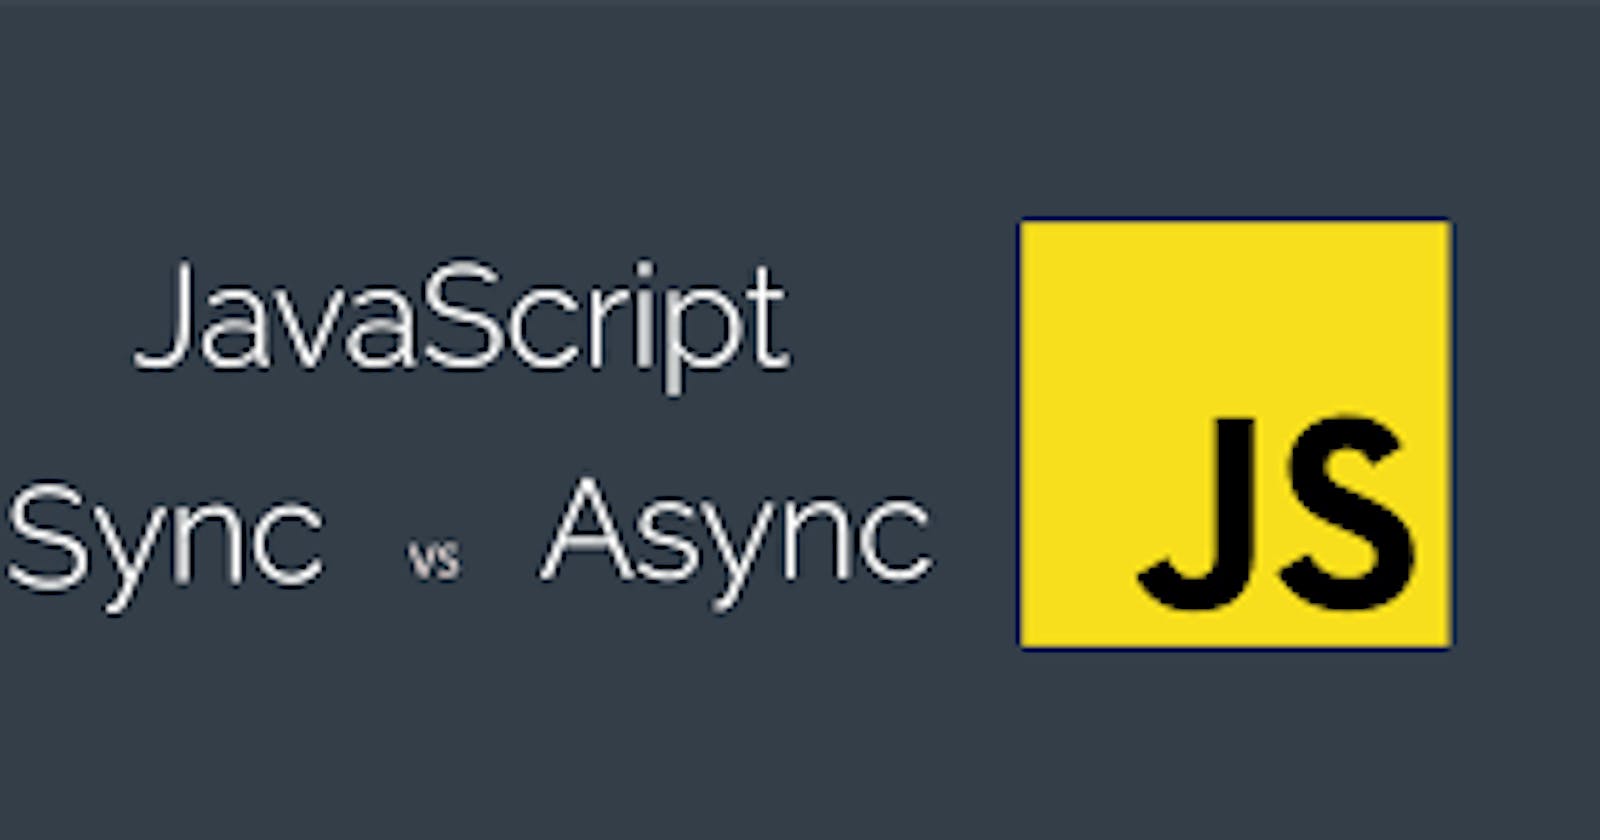 Asynchronous JavaScript